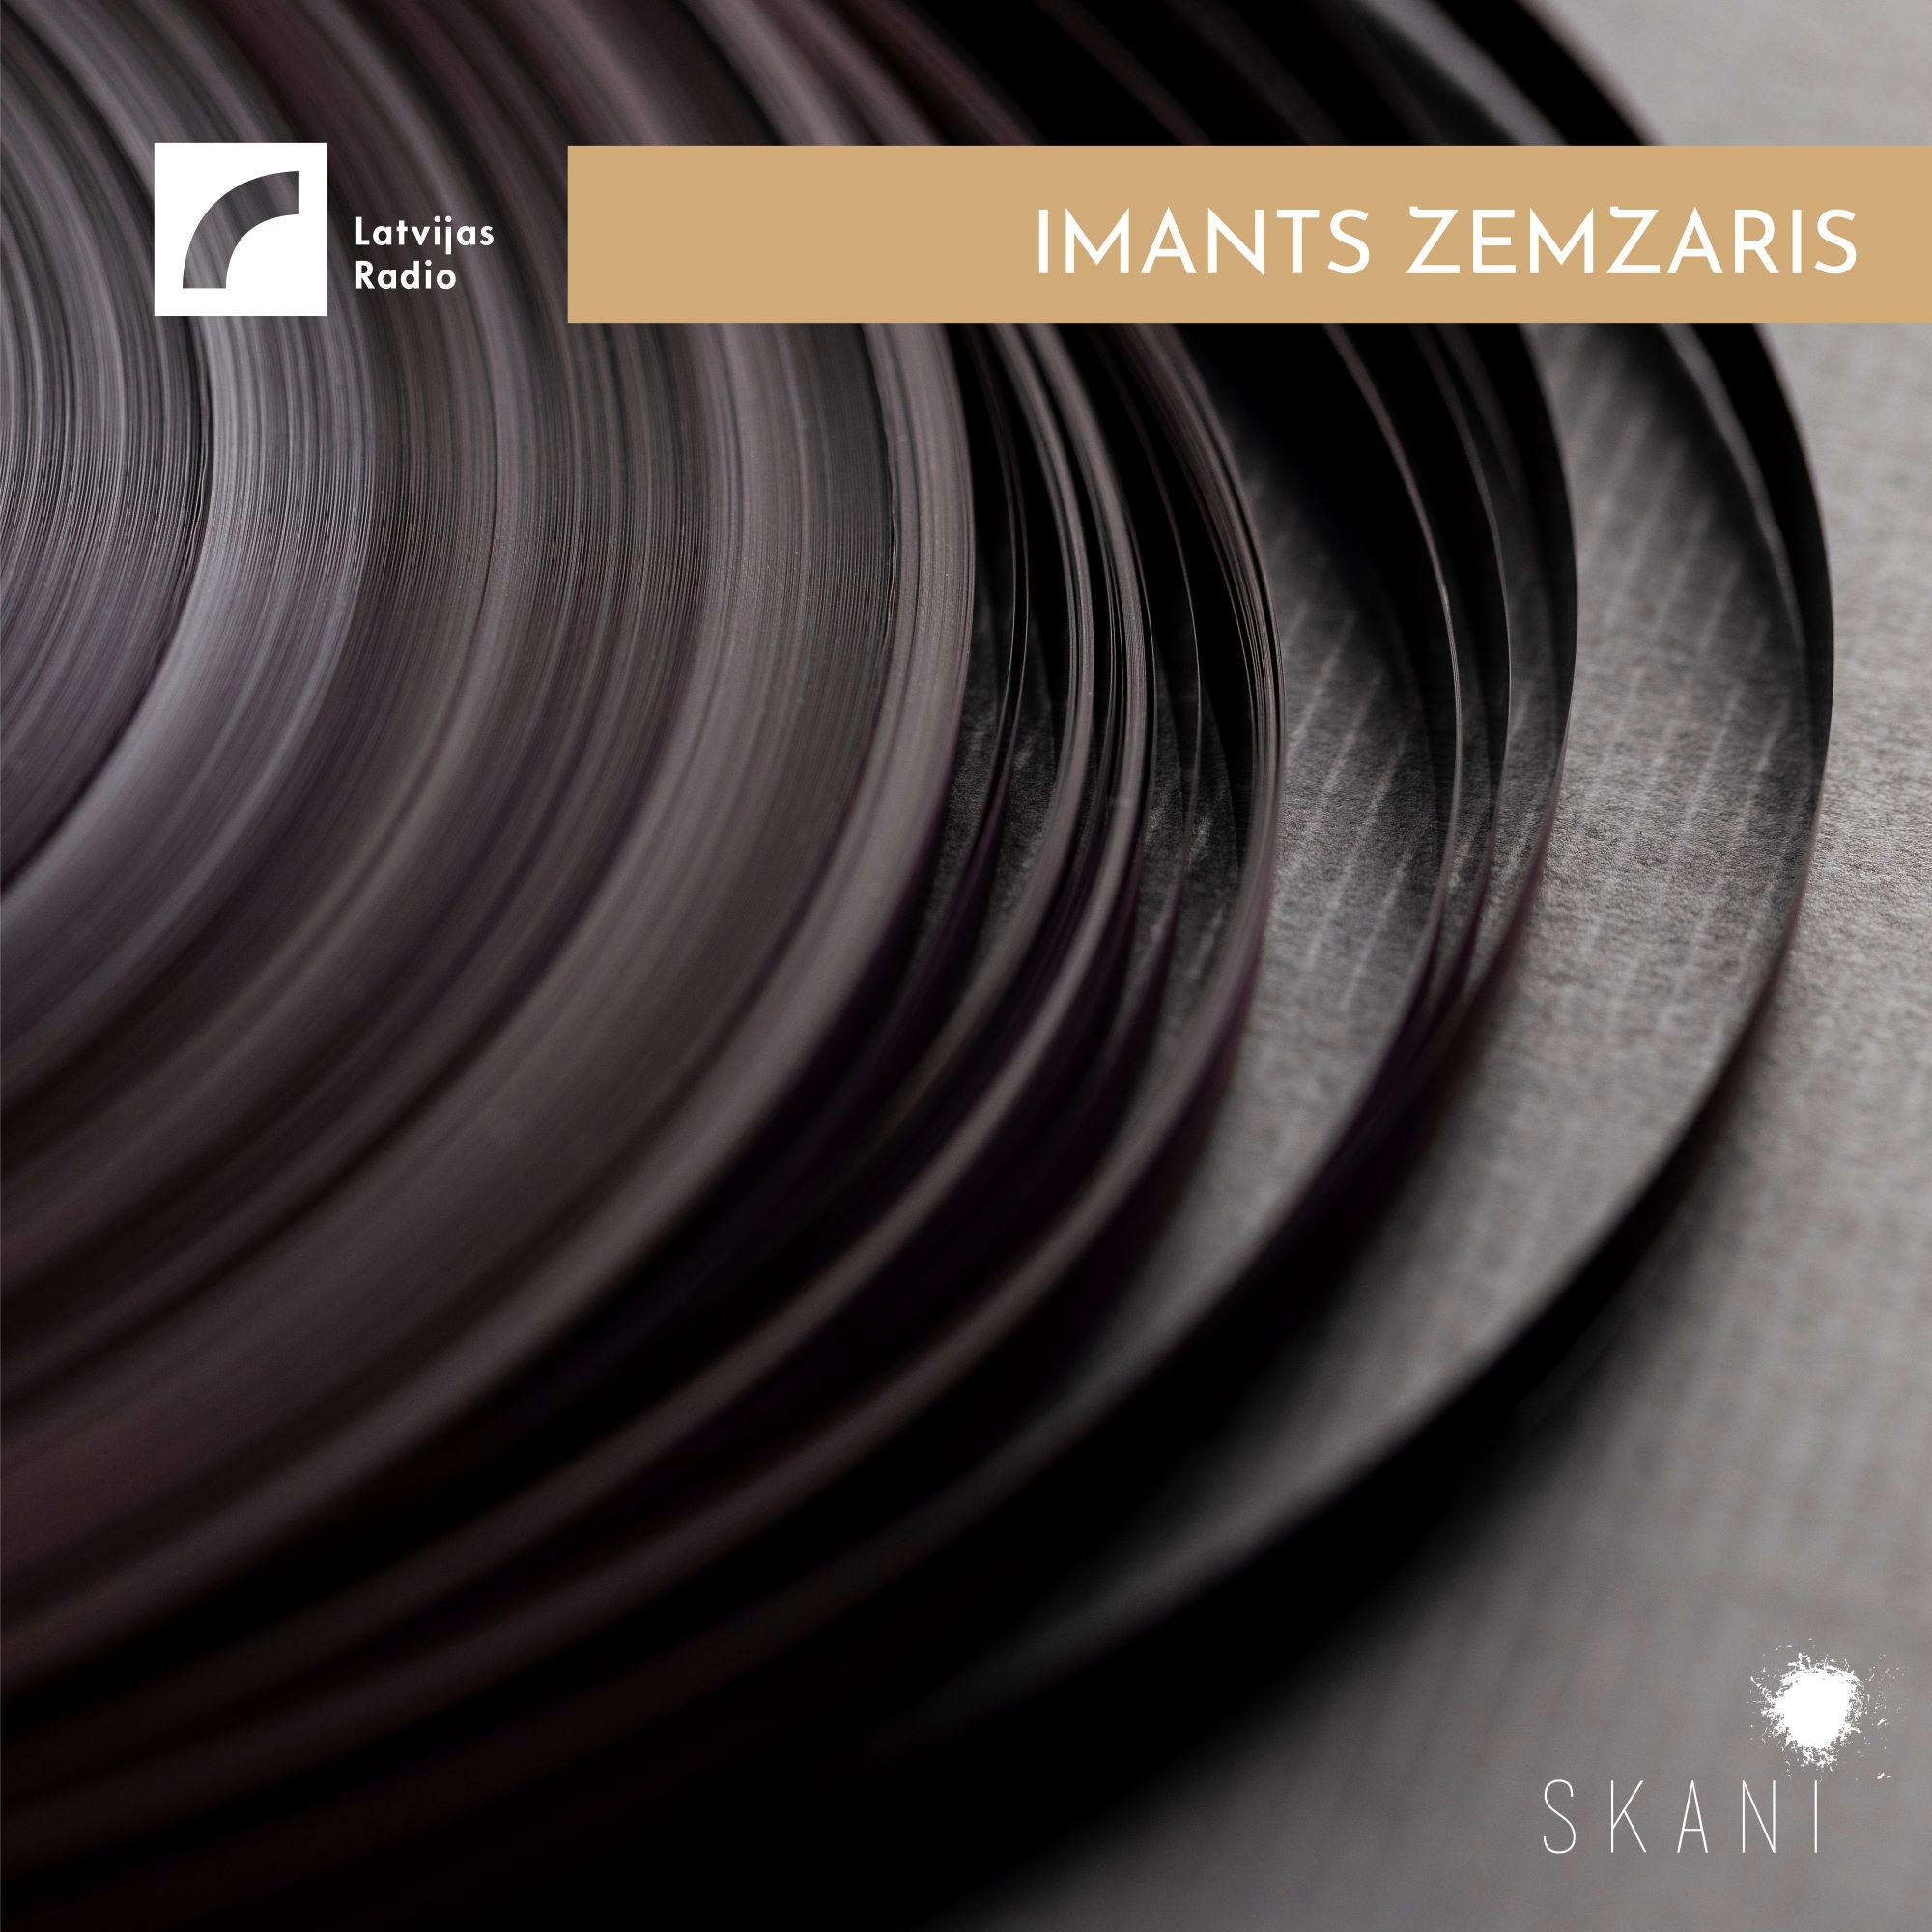 Latvian Radio Archive: Imants Zemzaris